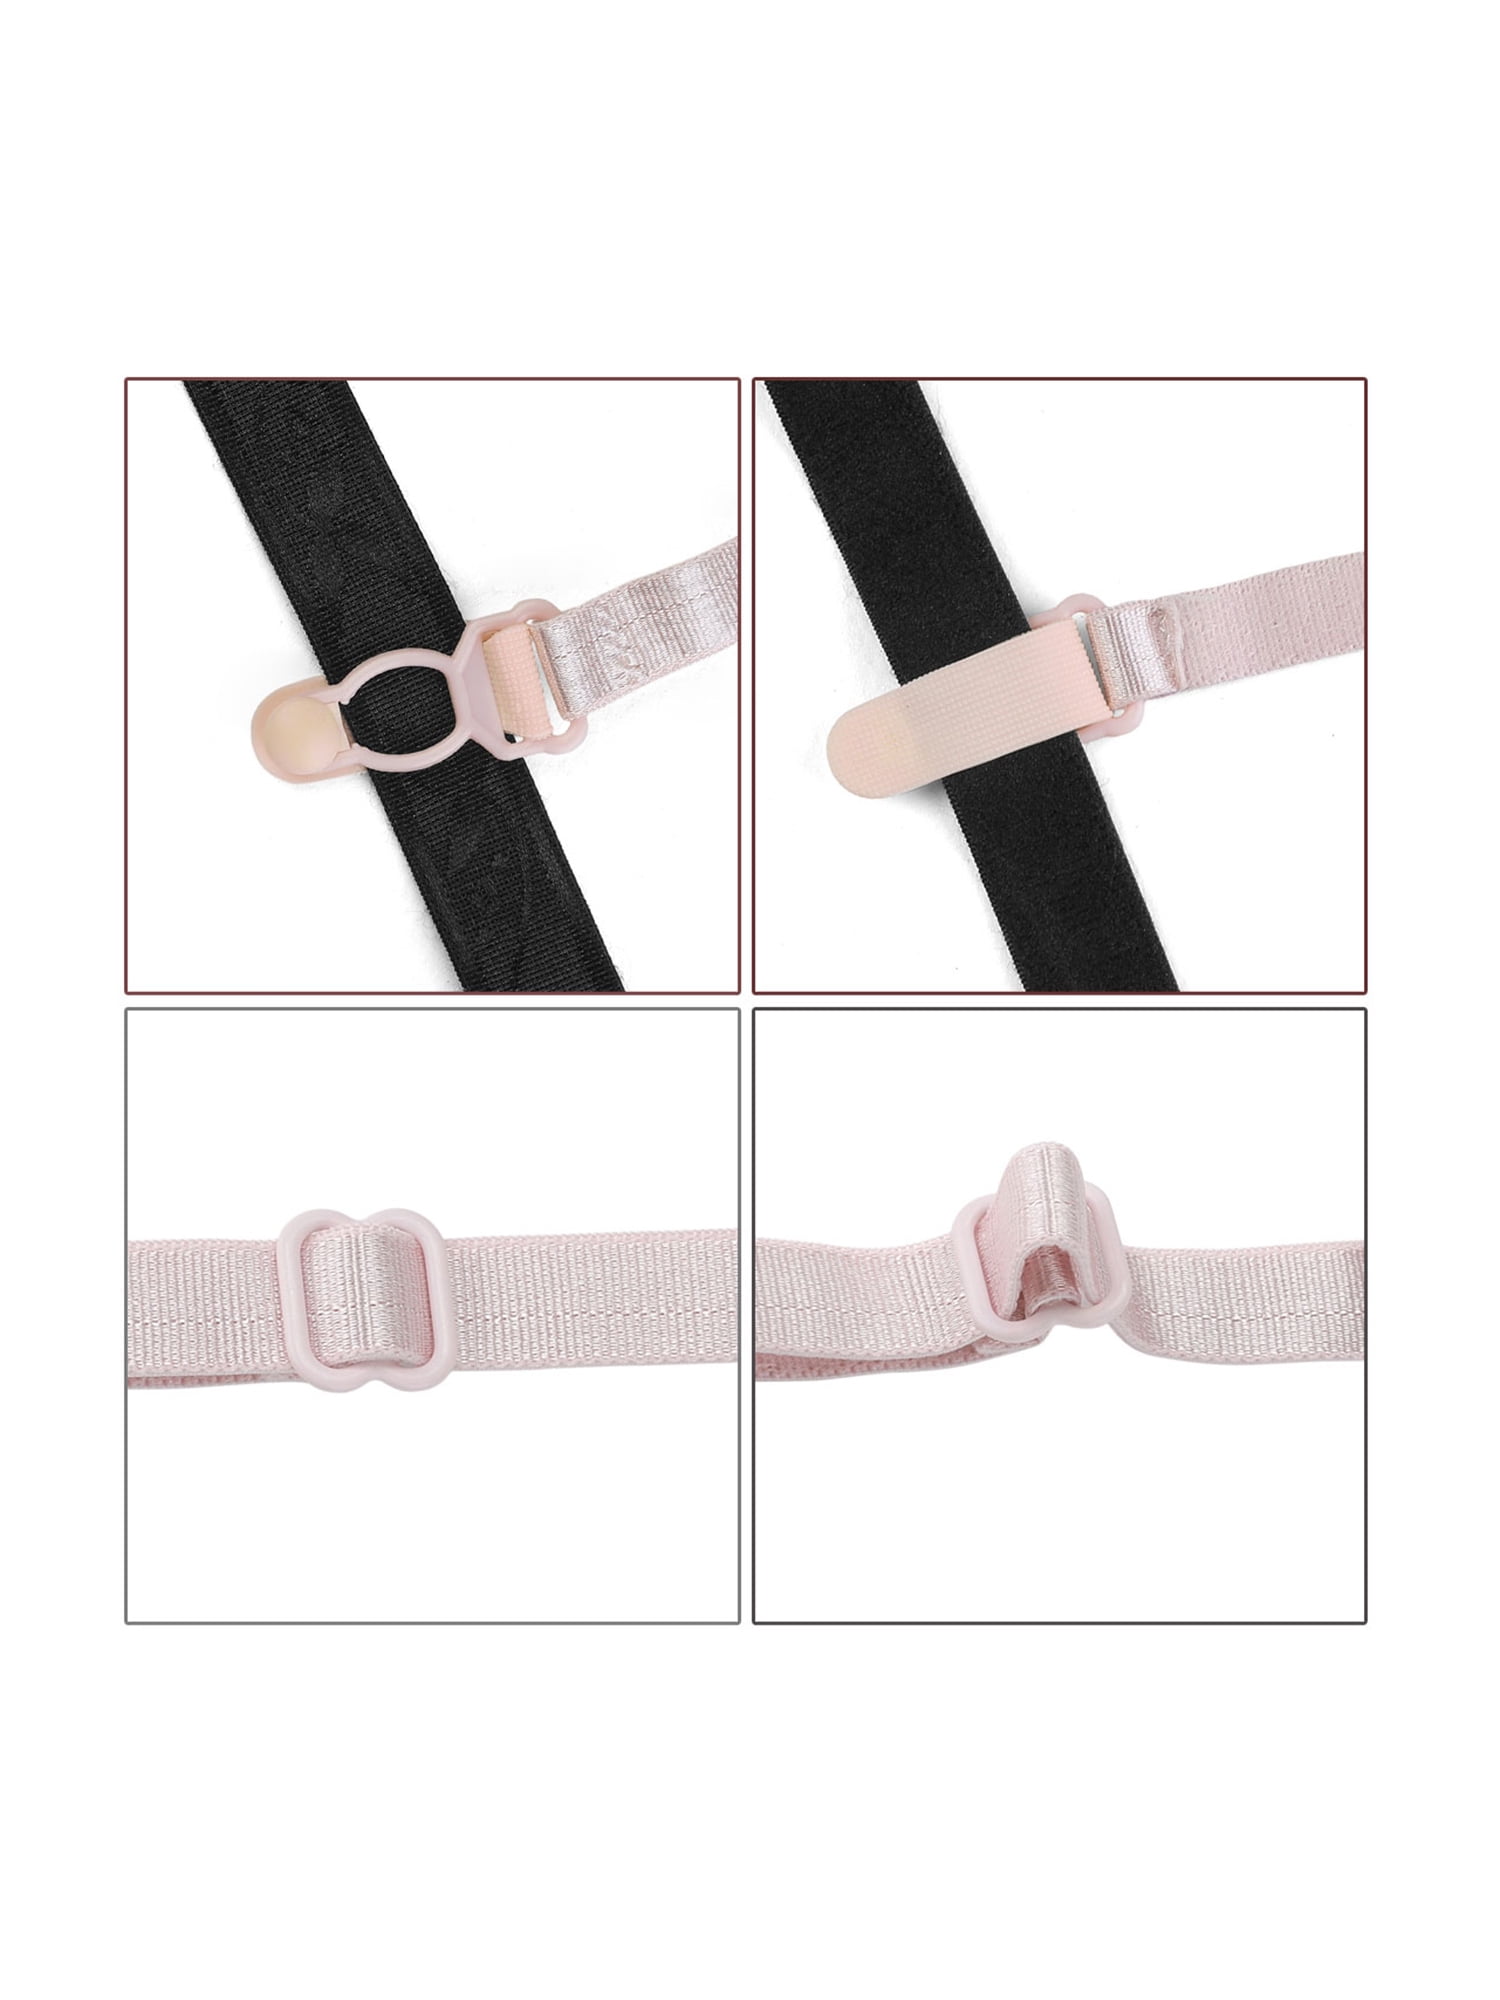 MJTrends: Bra Straps: white elastic adjustable